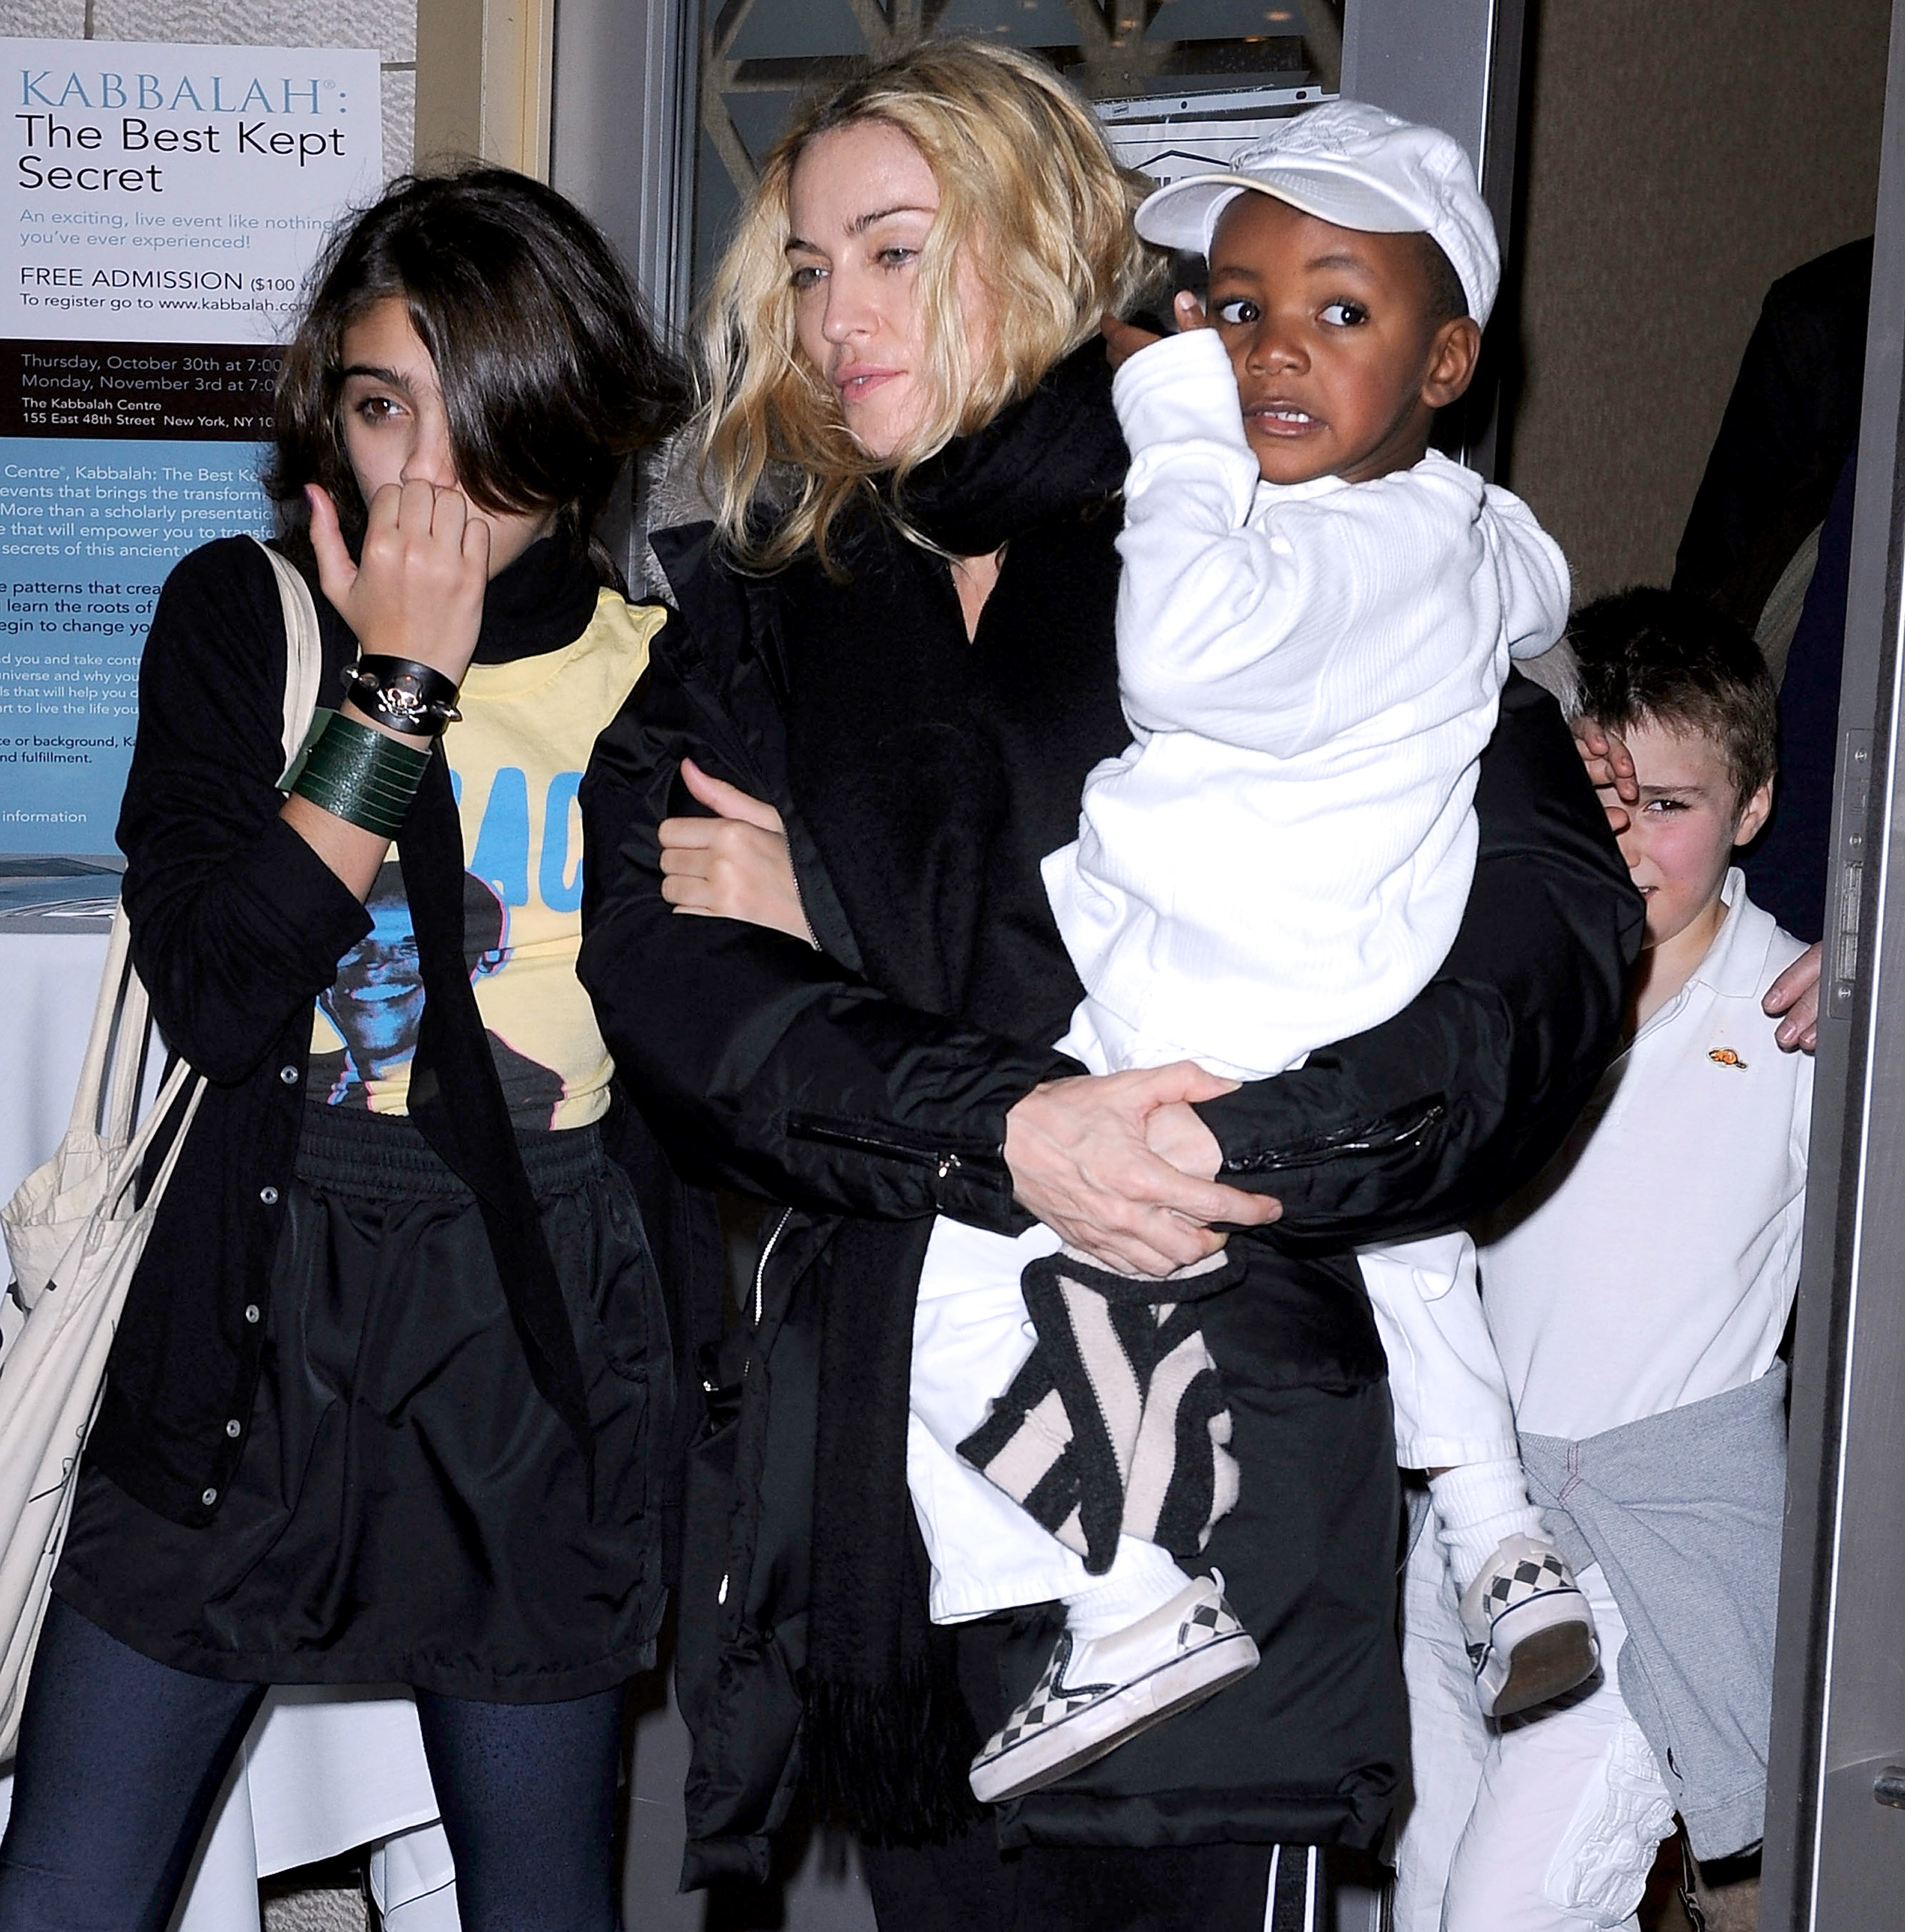 Madonna con sus hijos Lourdes "Lola" Leon, David Banda y Rocco Ritchie el 24 de octubre de 2008 en Nueva York | Foto: Getty Images